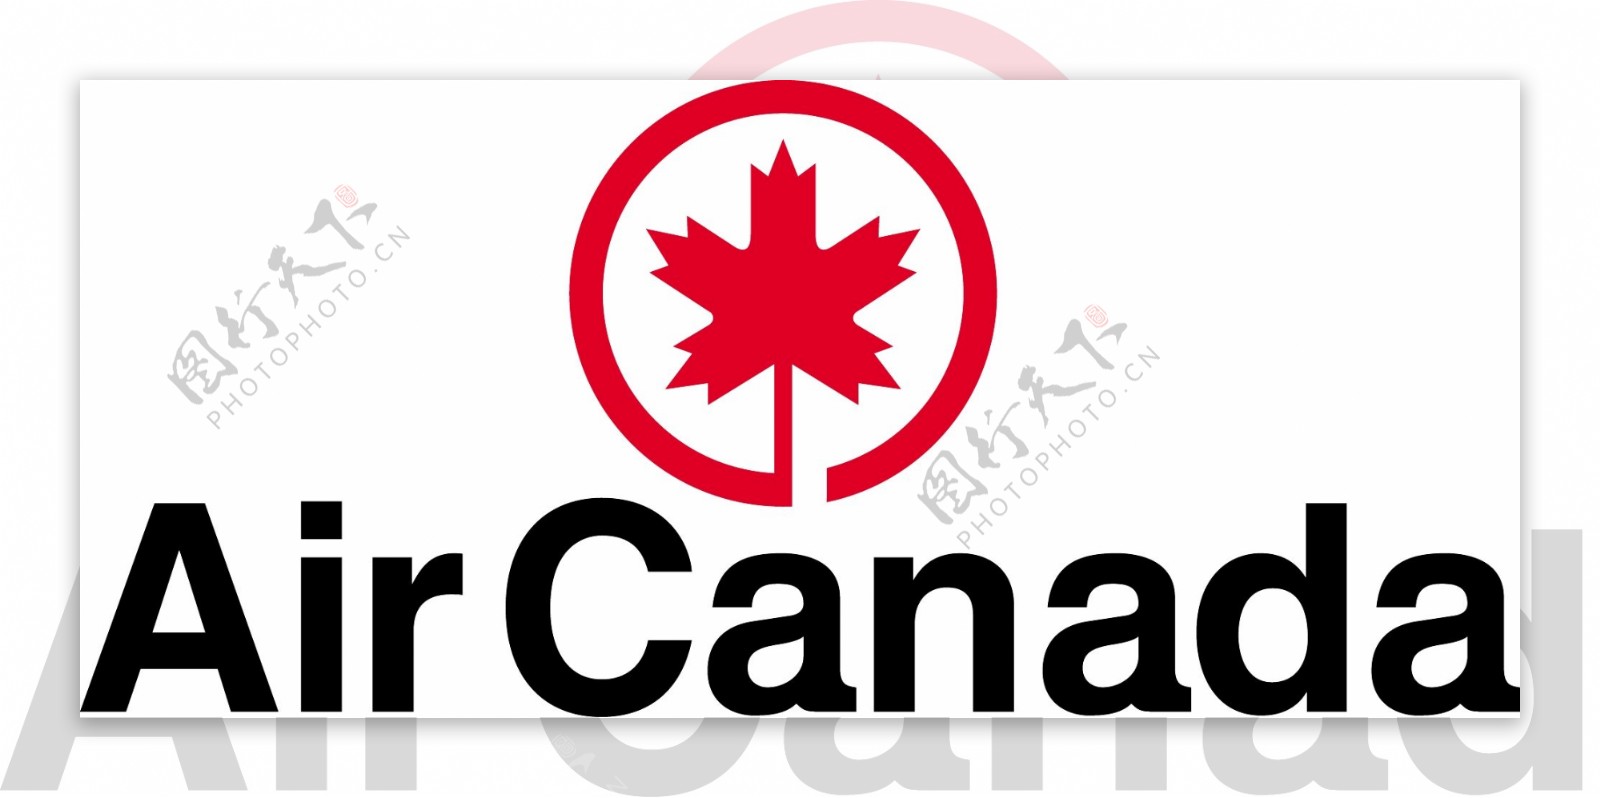 加拿大航空logo2